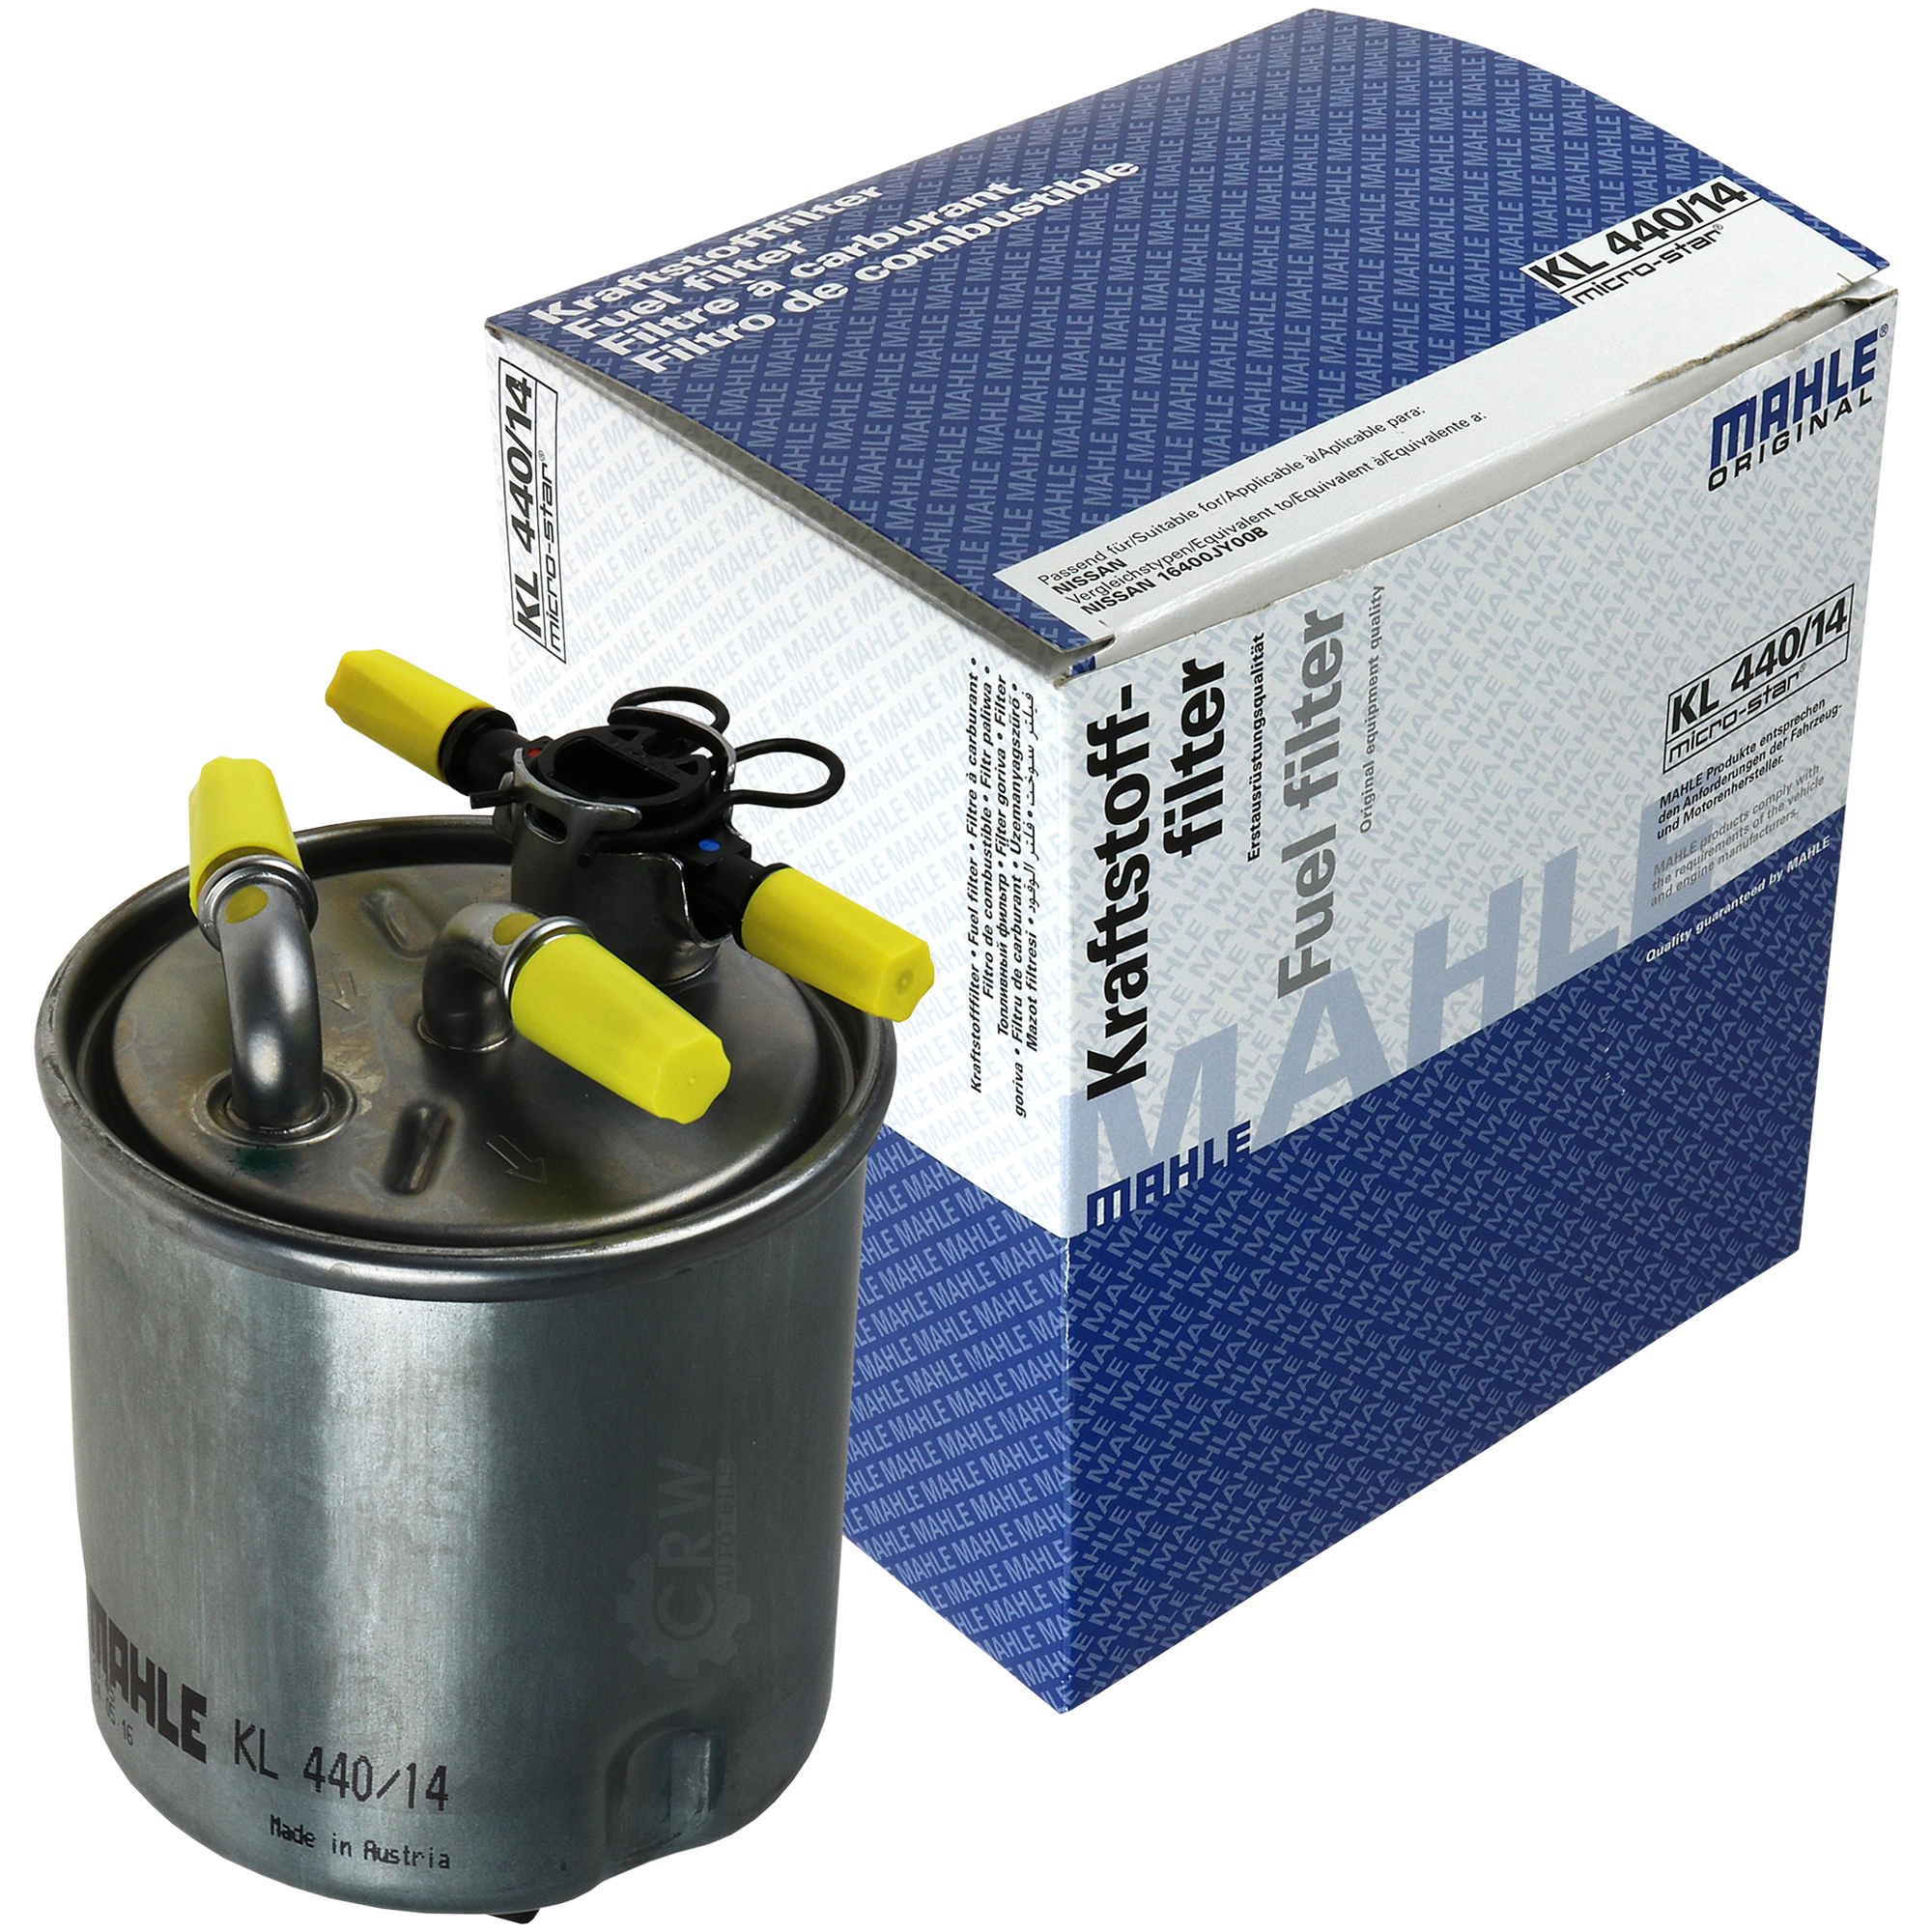 MAHLE Kraftstofffilter KL 440/14 Fuel Filter